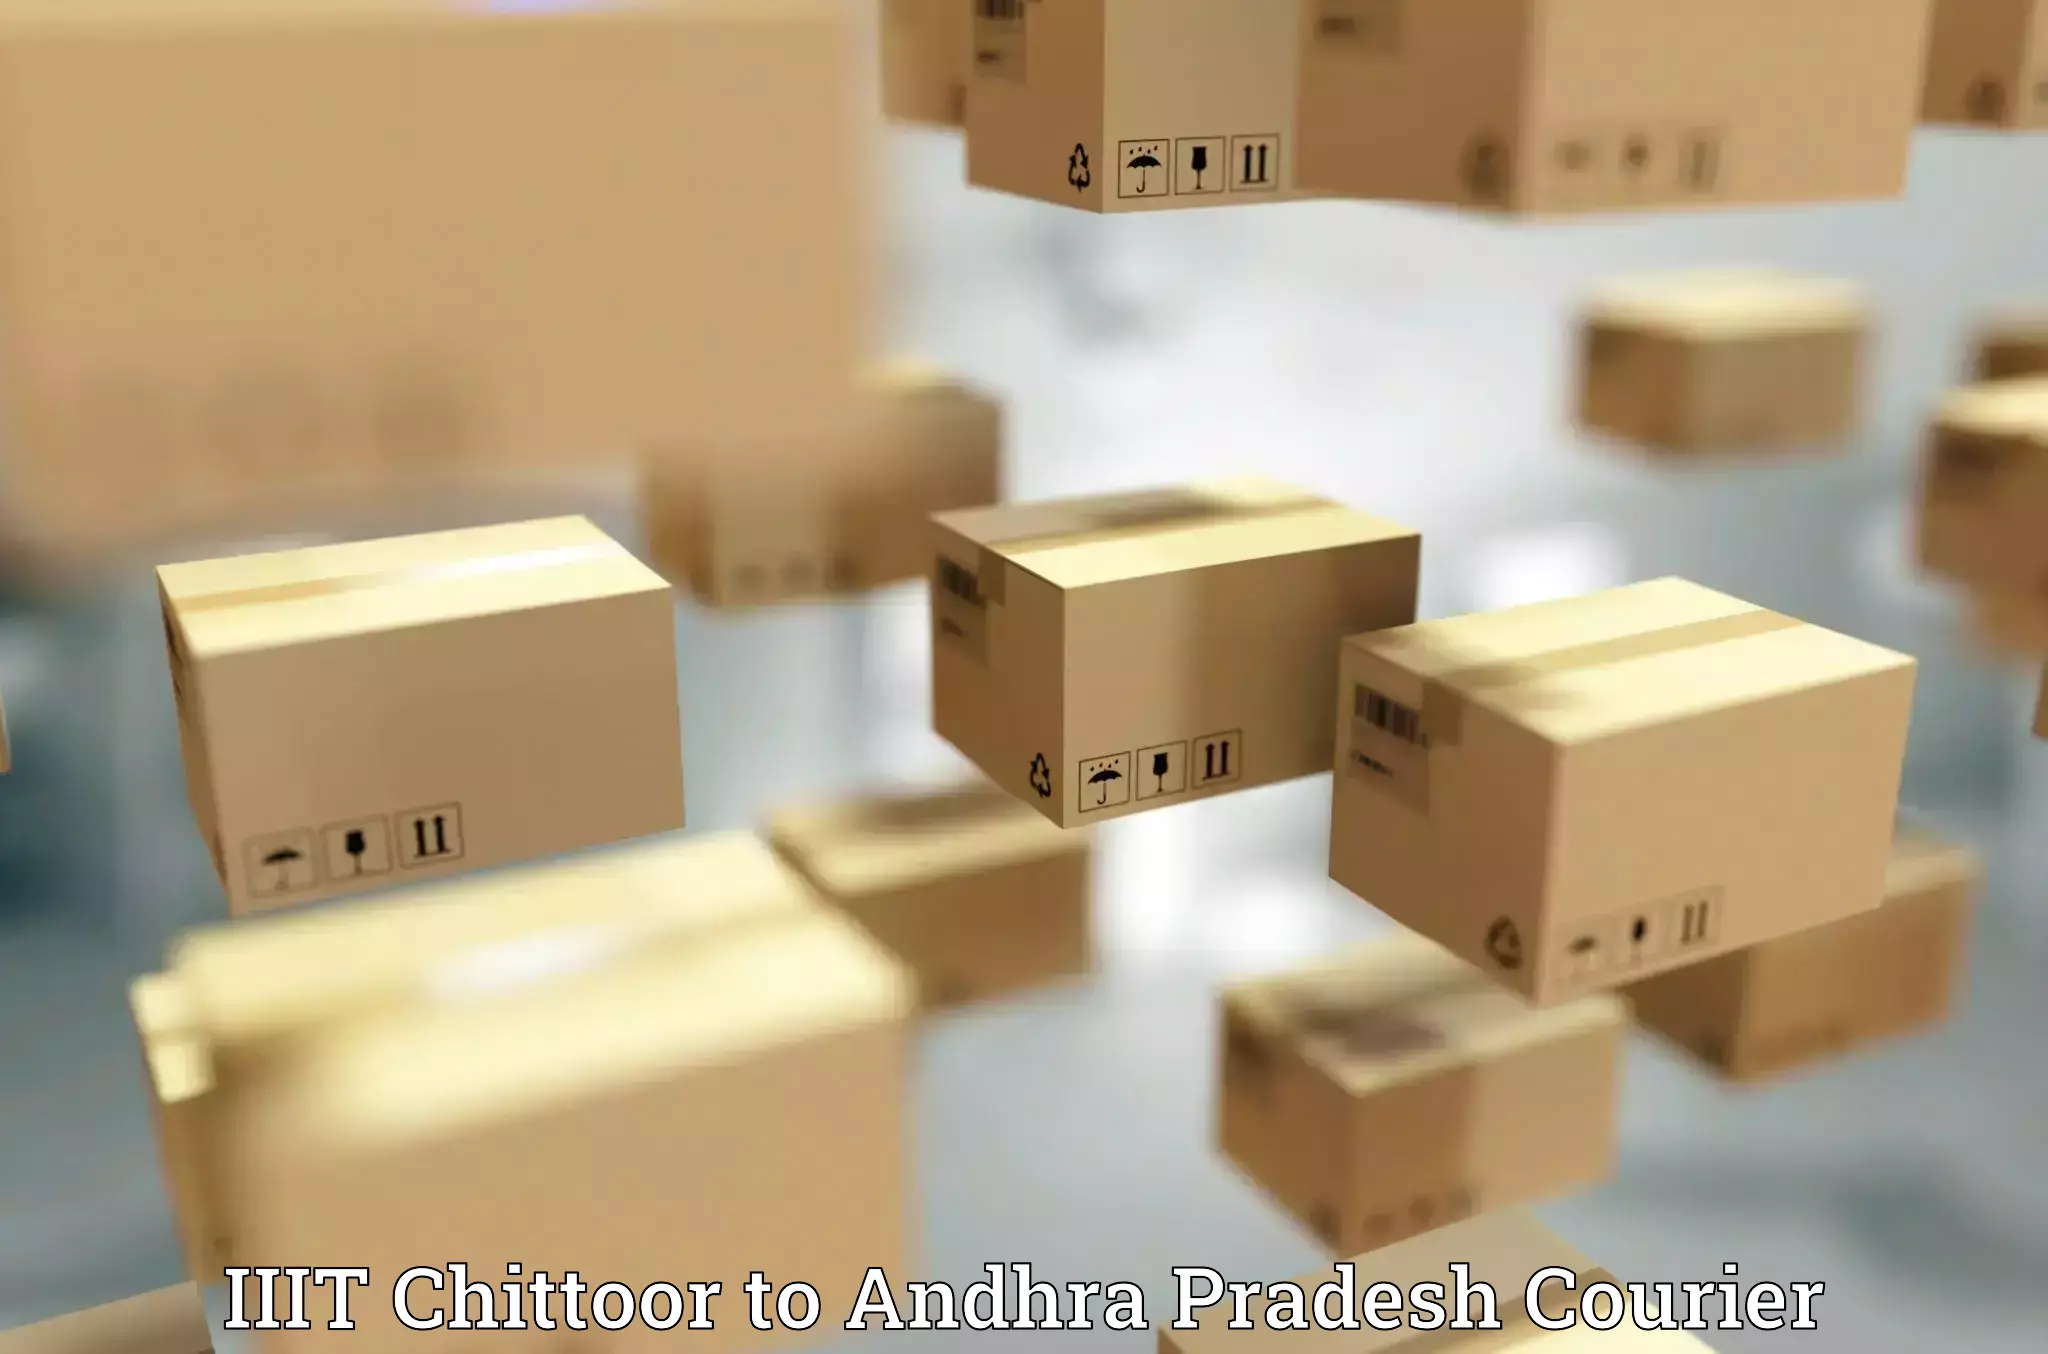 Corporate courier solutions IIIT Chittoor to IIIT Chittoor